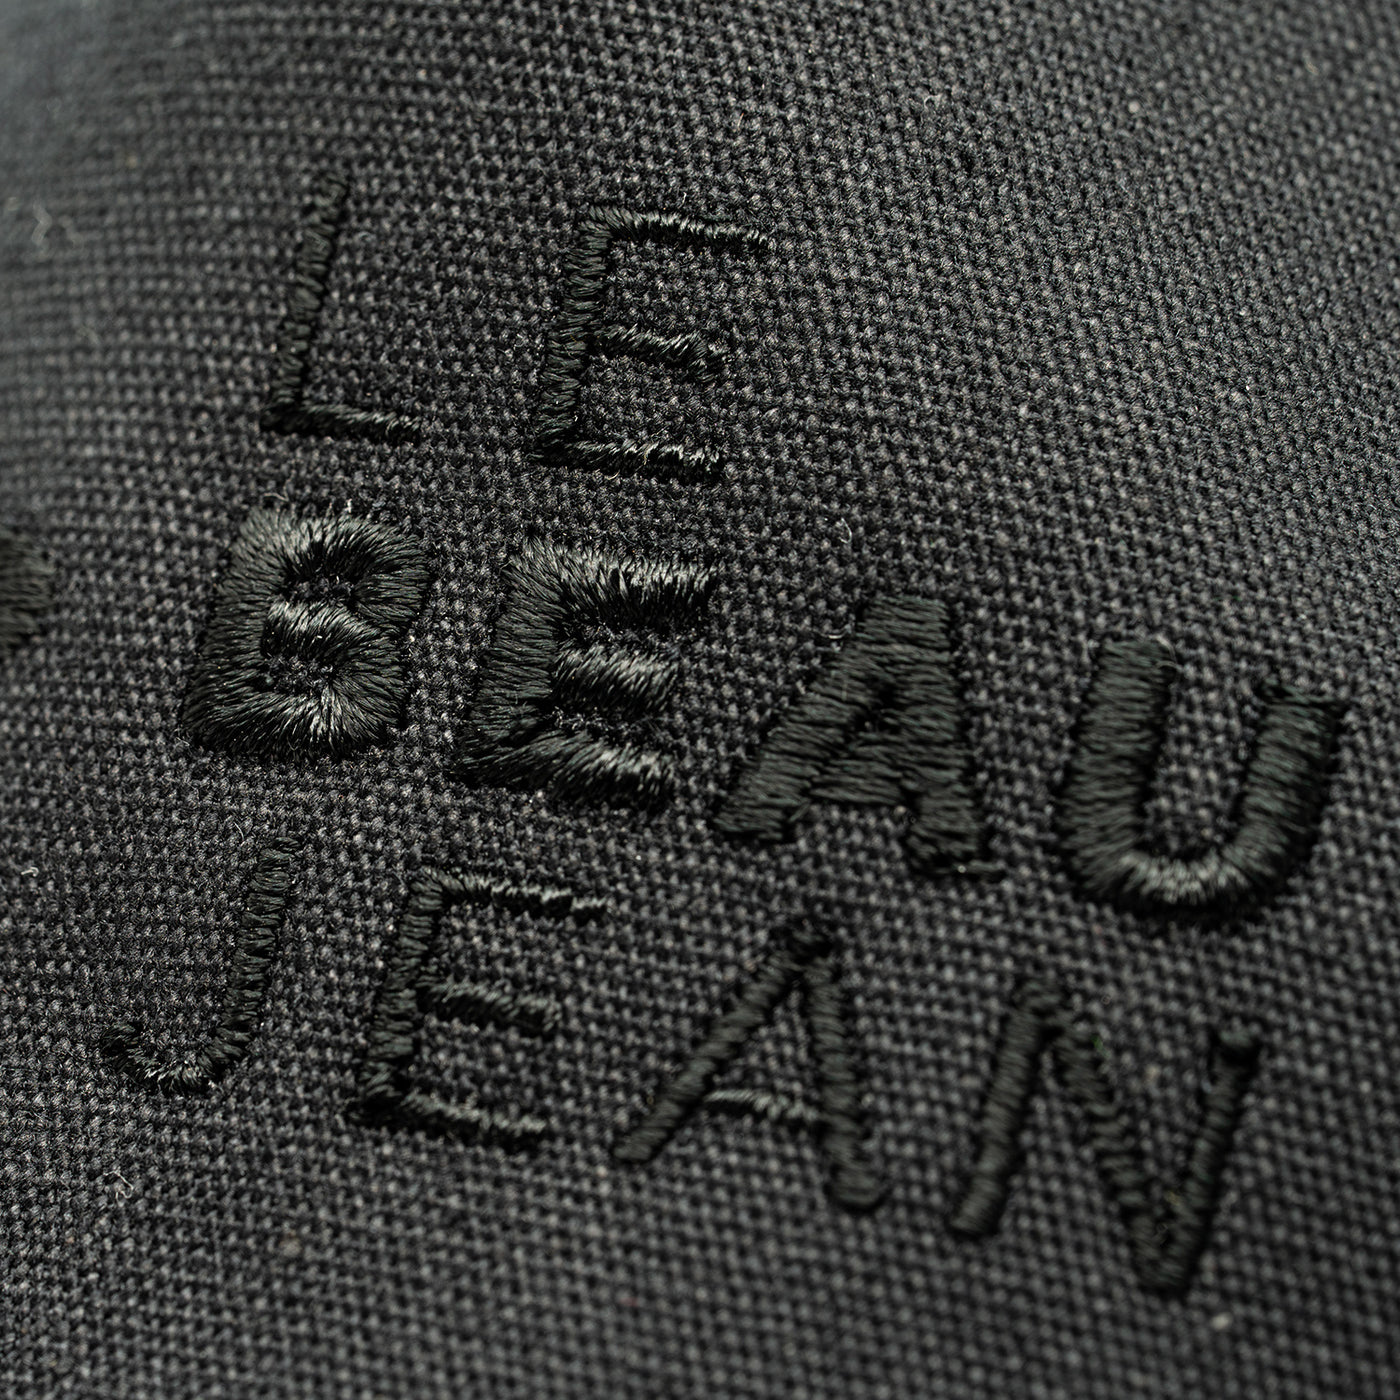 Le Beau Jean - Casquette en coton noir à logo brodé noir